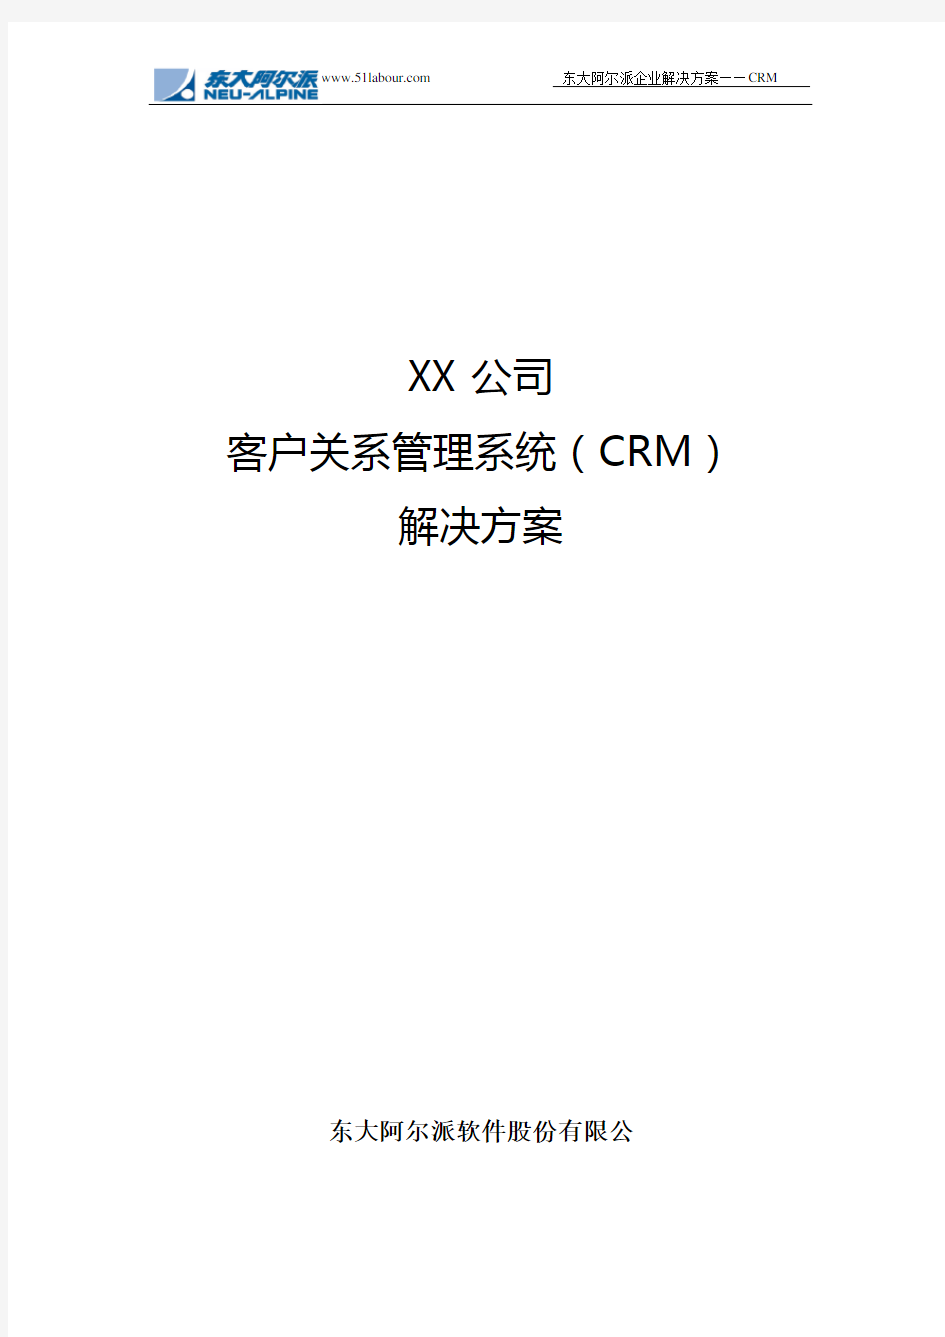 客户关系管理系统(CRM)解决方案